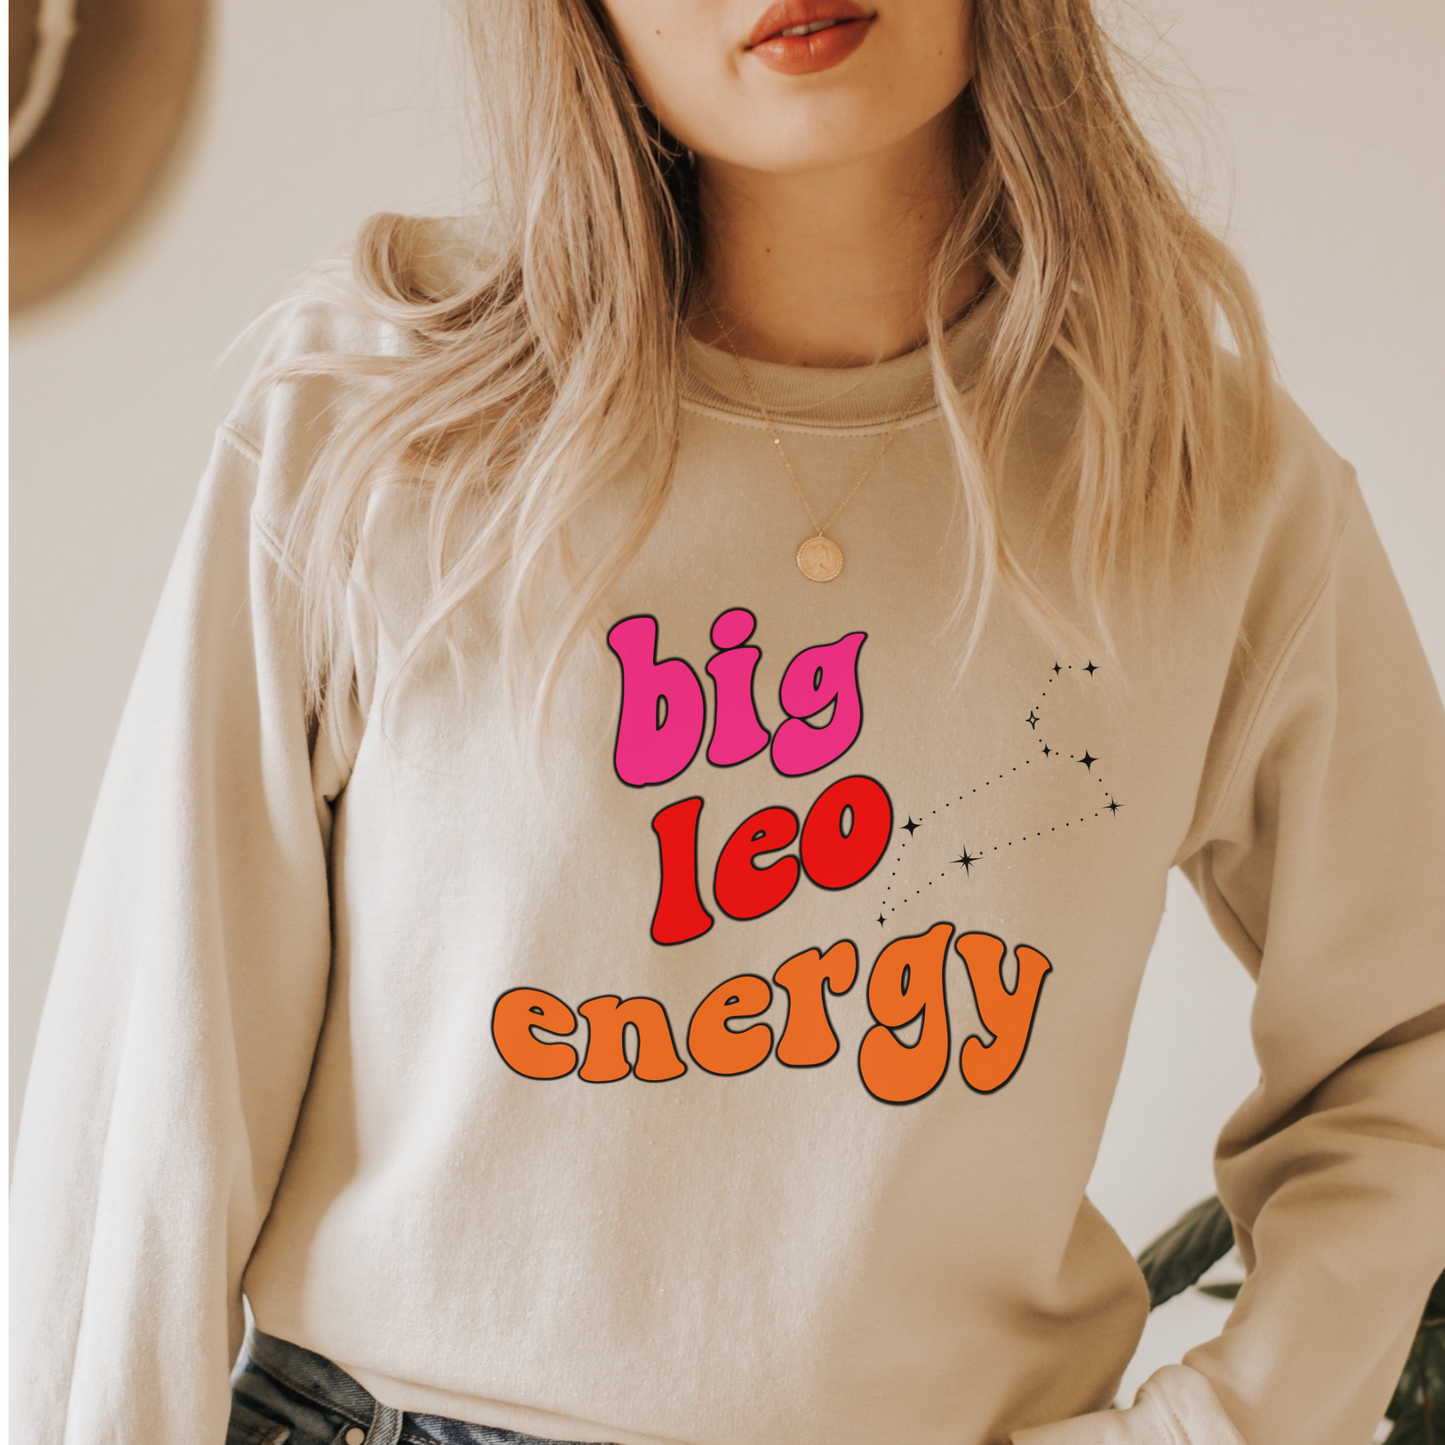 Leo Sweatshirt, Big Leo Energy Sweatshirt, Gift for Leo Astrology lover sweatshirt, Gift for Astrology Lover